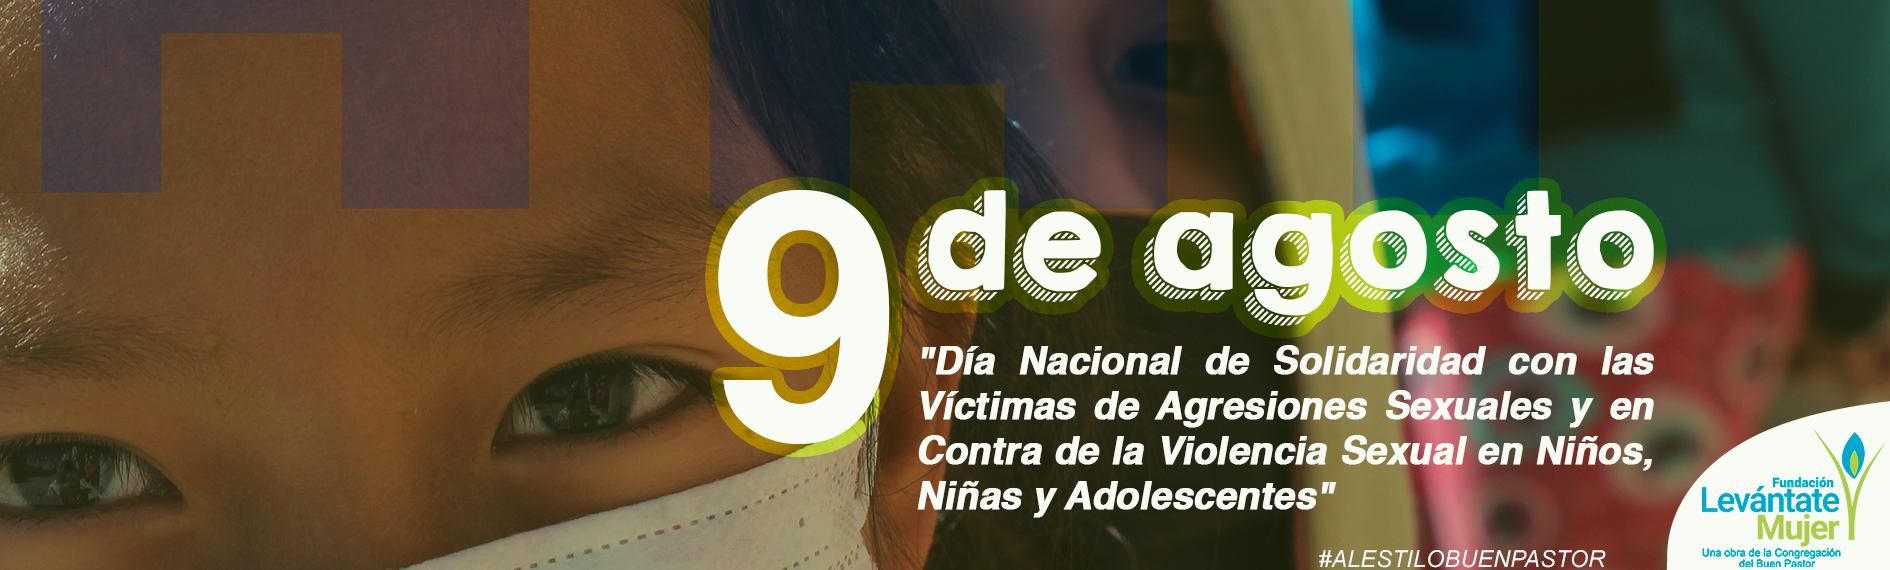 banner_9_de_agosto_día_nacional_Contra_de_la_Violencia_Sexual_en_Niños_Niñas_y_Adolescentes233.png